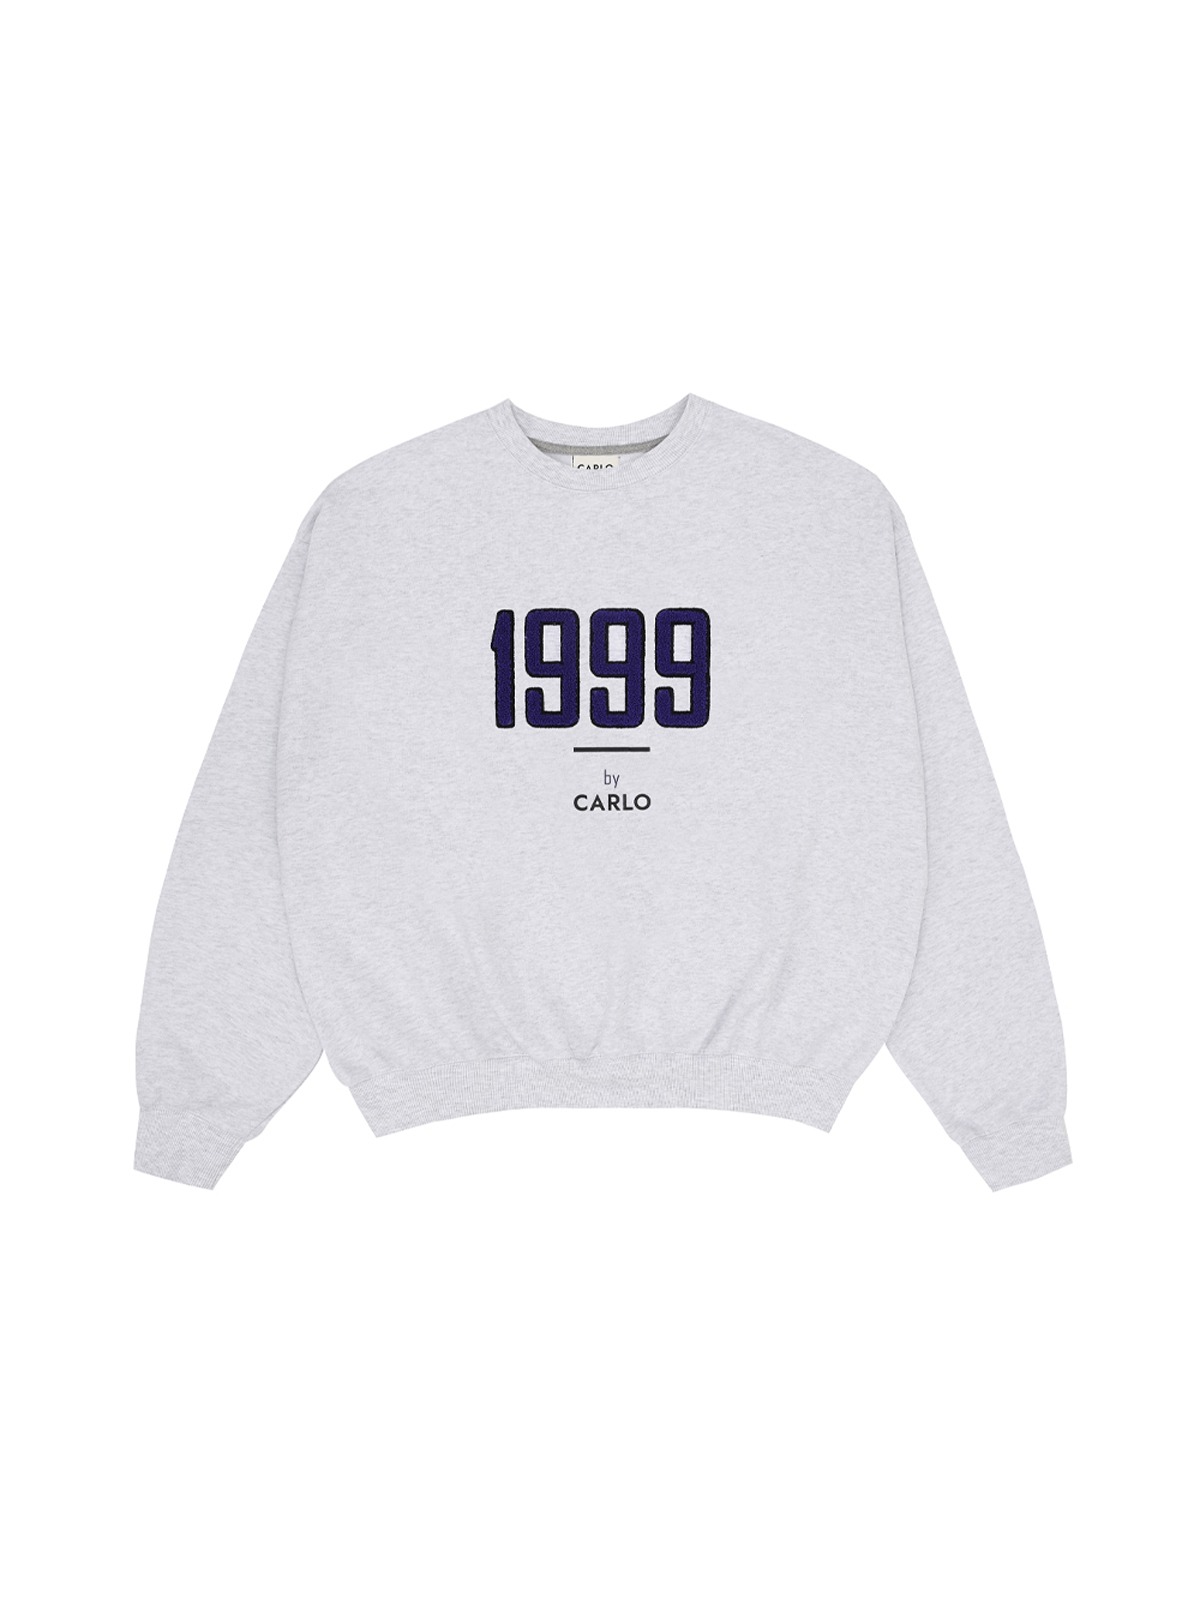 1999 CARLO Sweatshirts Grey